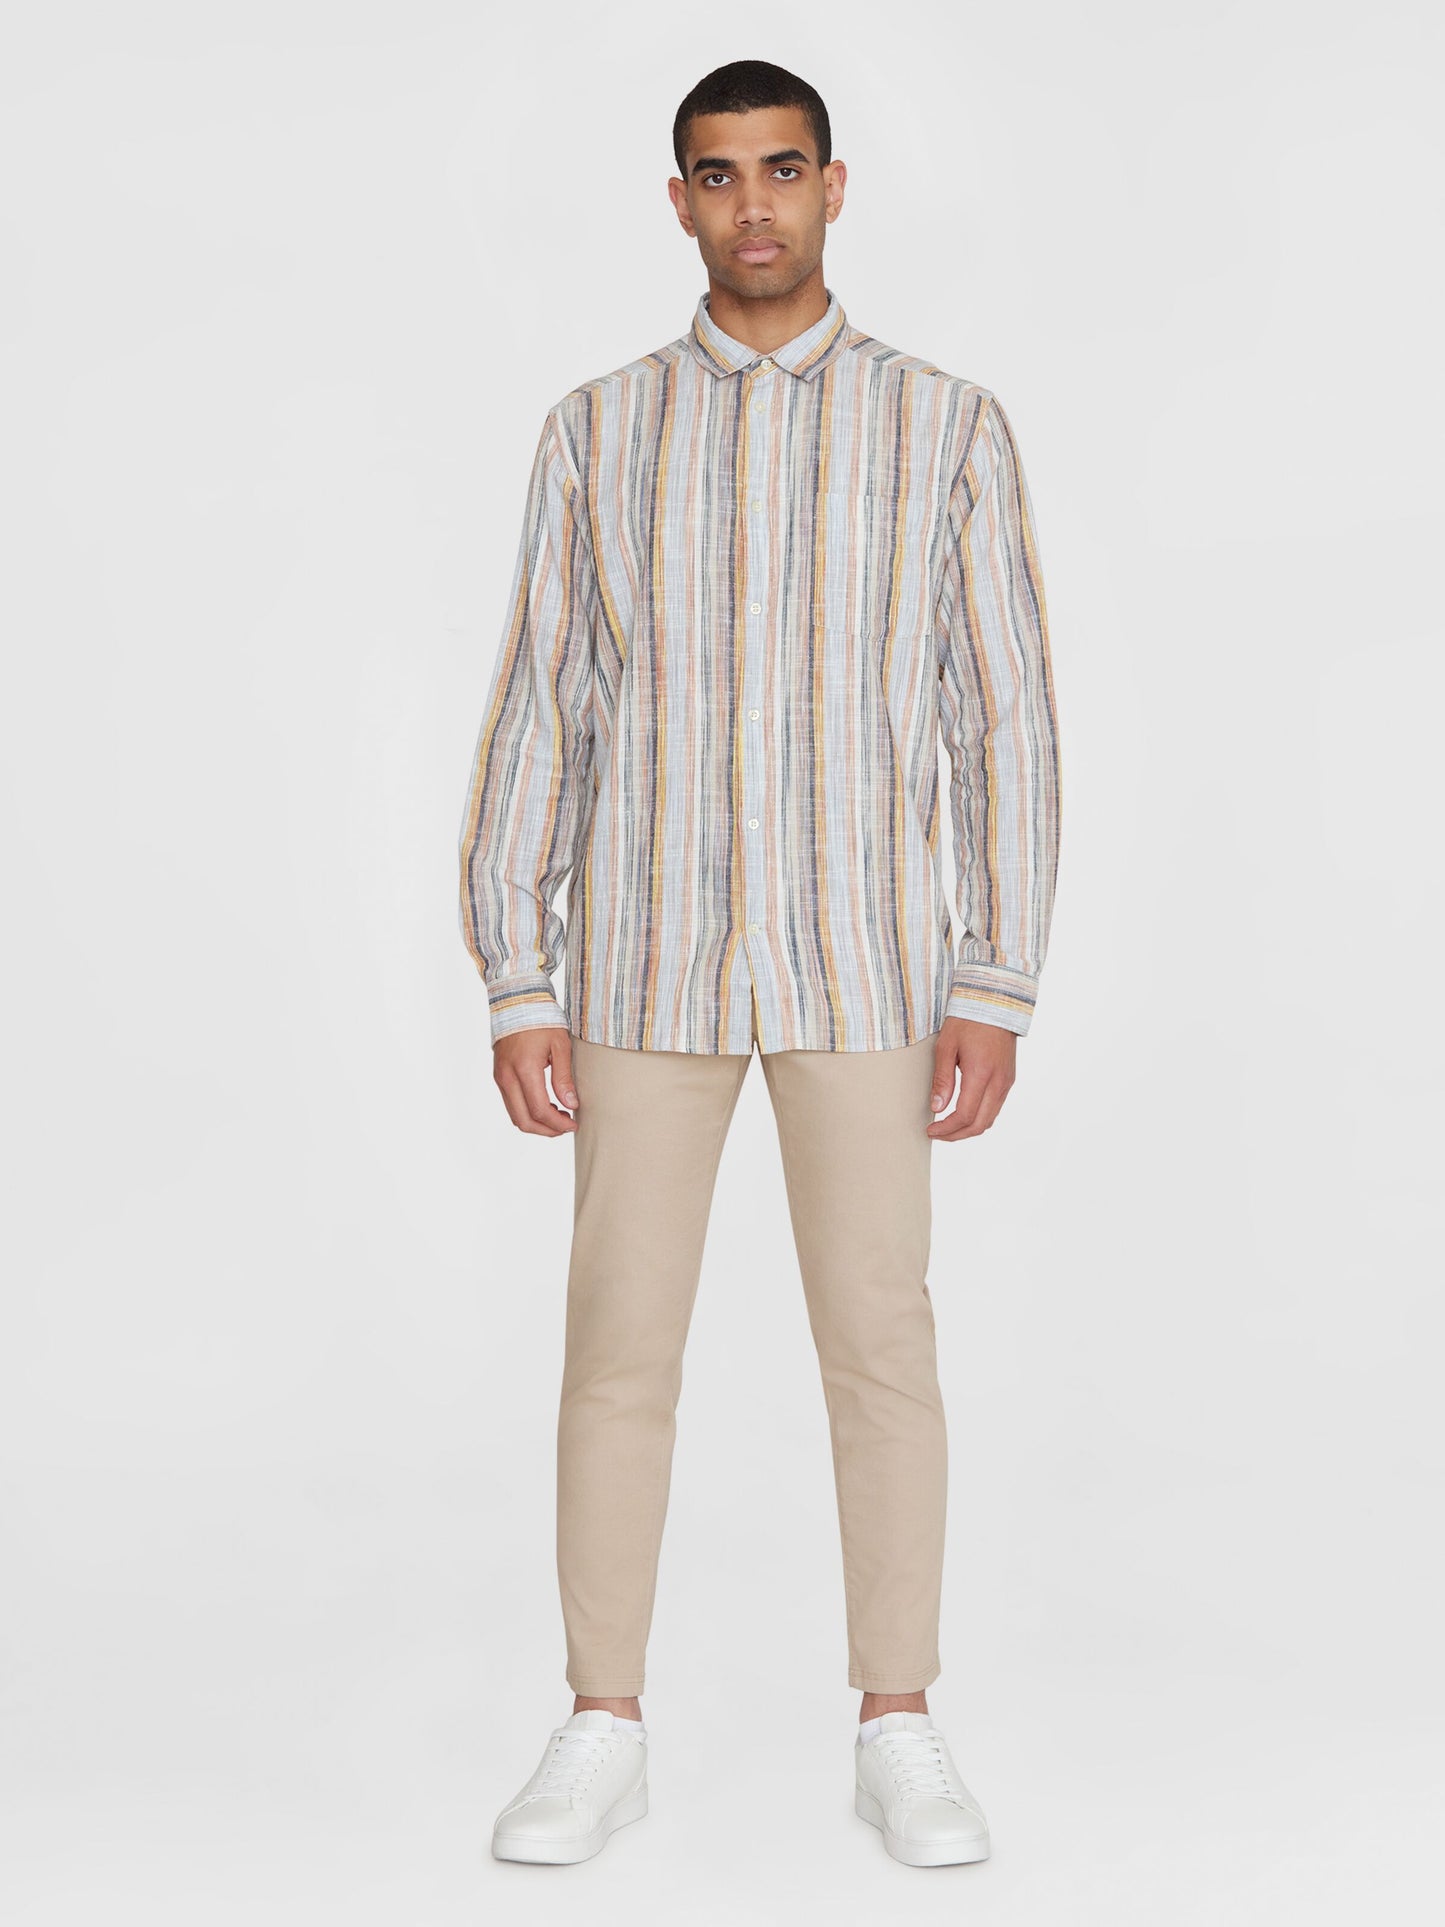 KCA - Loose multicolored striped linen shirt Multi color stripe